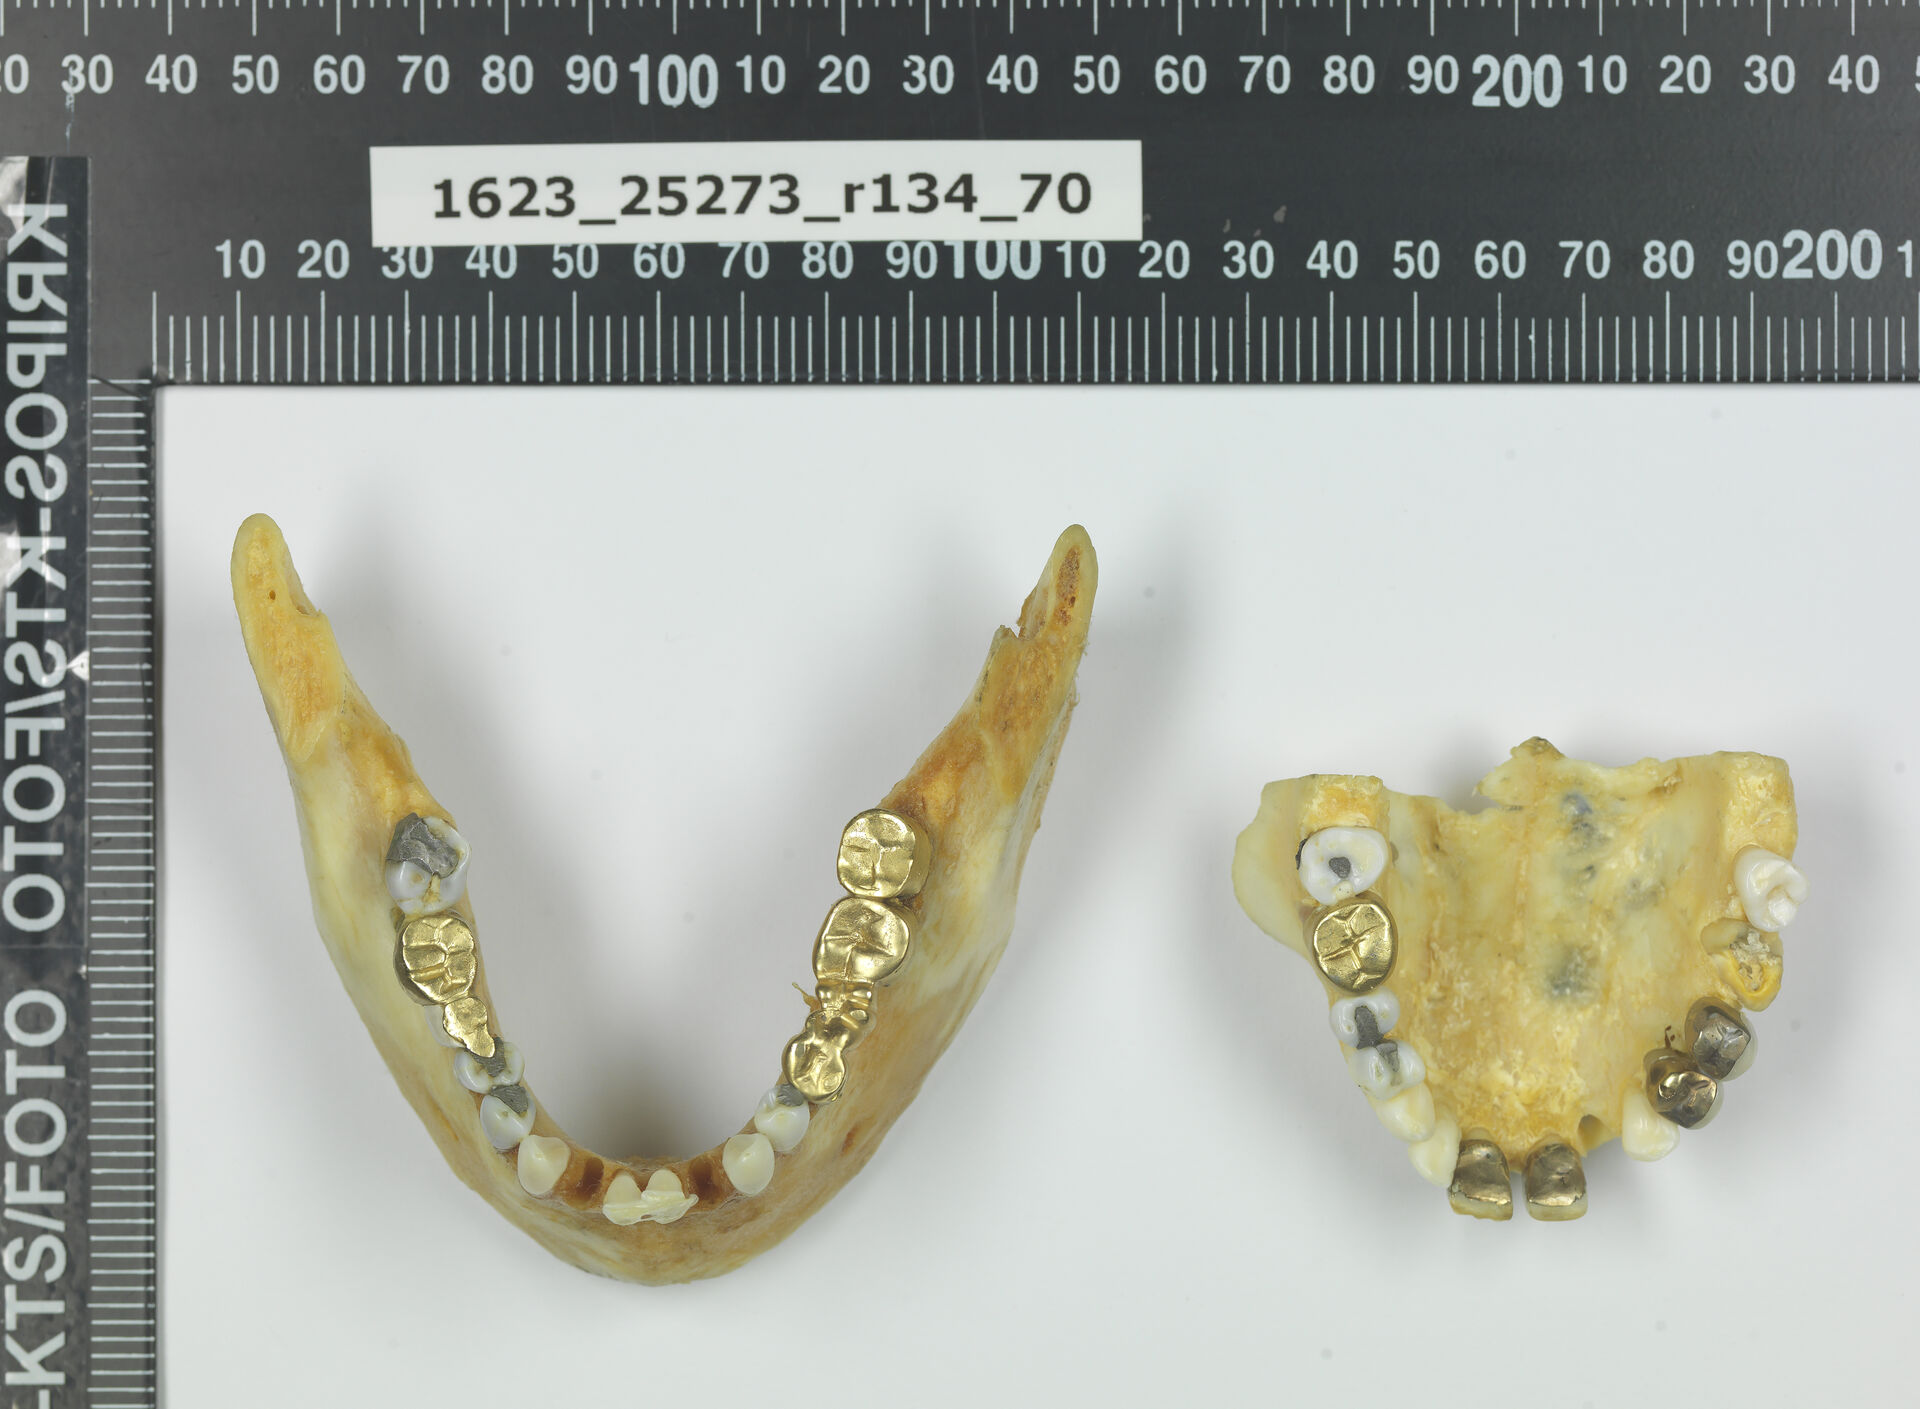 Det var gjort en god del arbeid på tannsettet til «Isdalskvinnen», blant annet en rekke gullbroer som ikke var typisk for norsk tannbehandling.